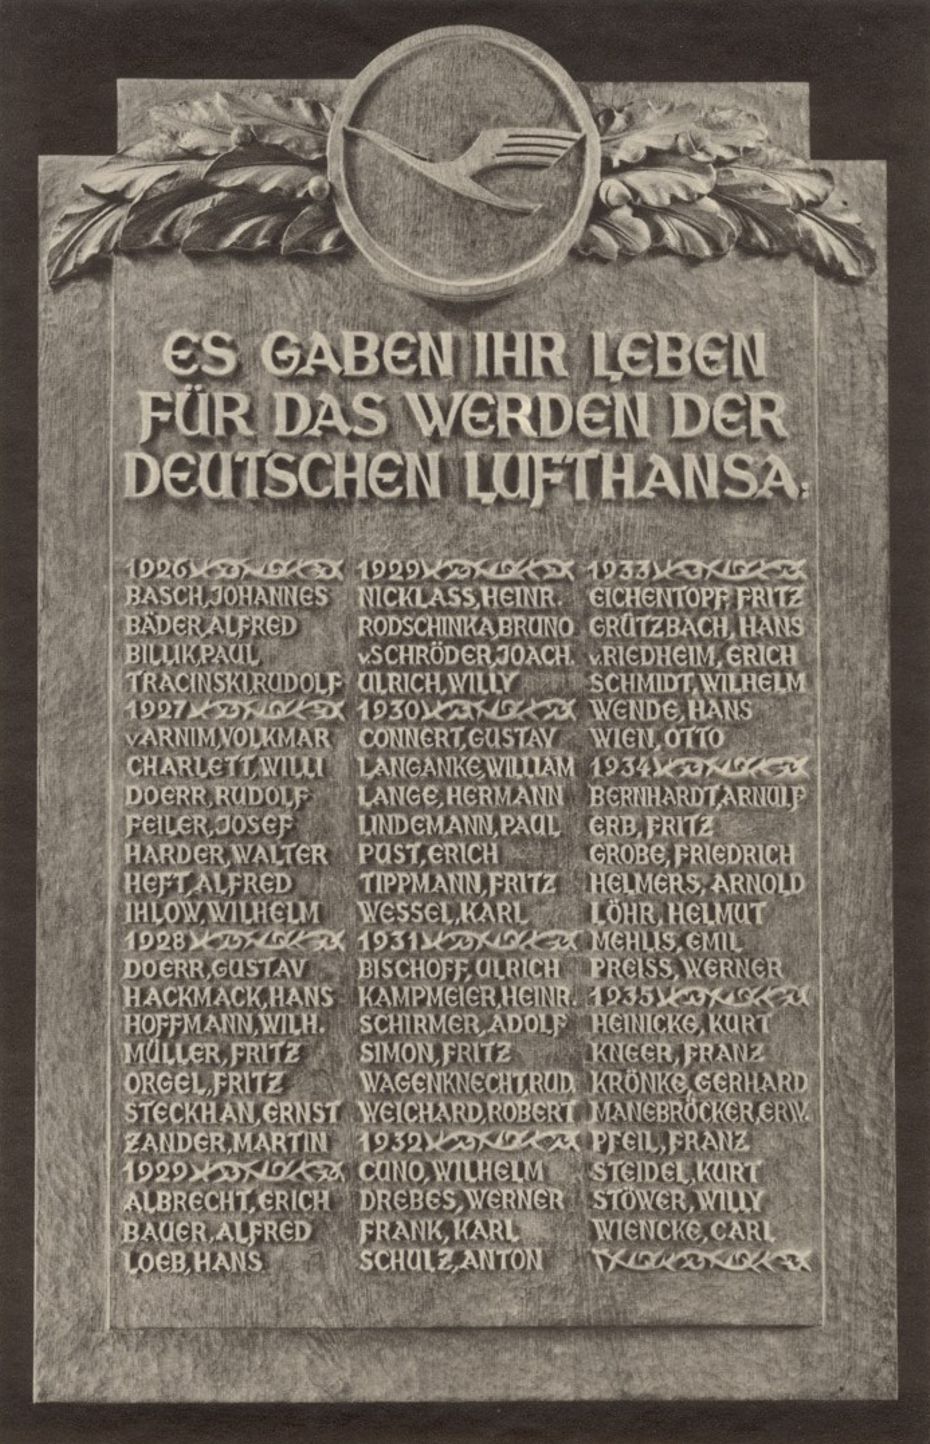 Liste der zwischen 1920 und 1920 verunglückten Piloten der Lufthansa